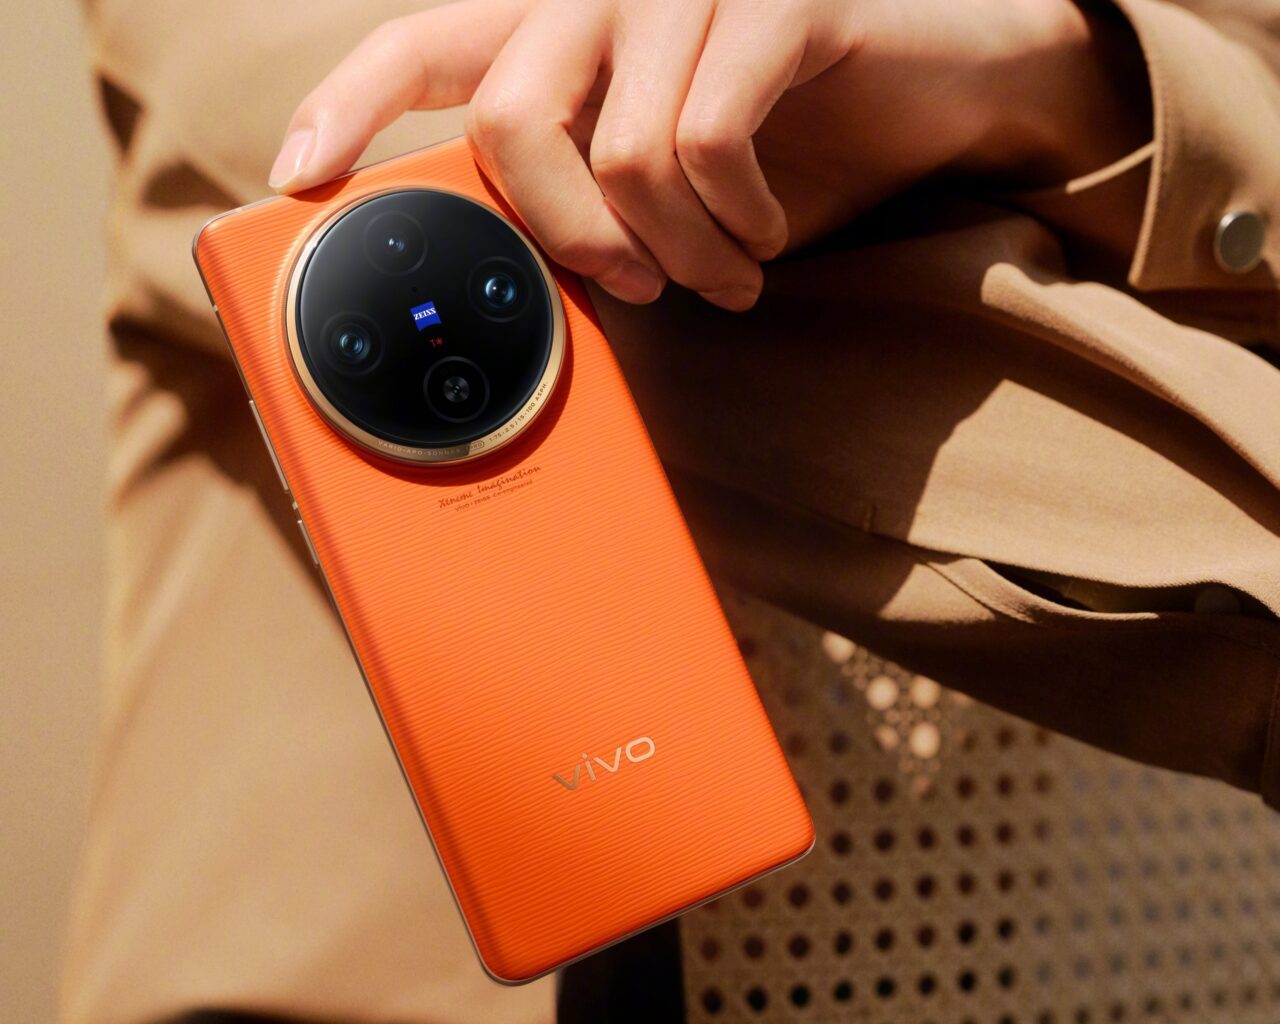 Pomarańczowy smartfon vivo trzymany w ręku na beżowym tle.